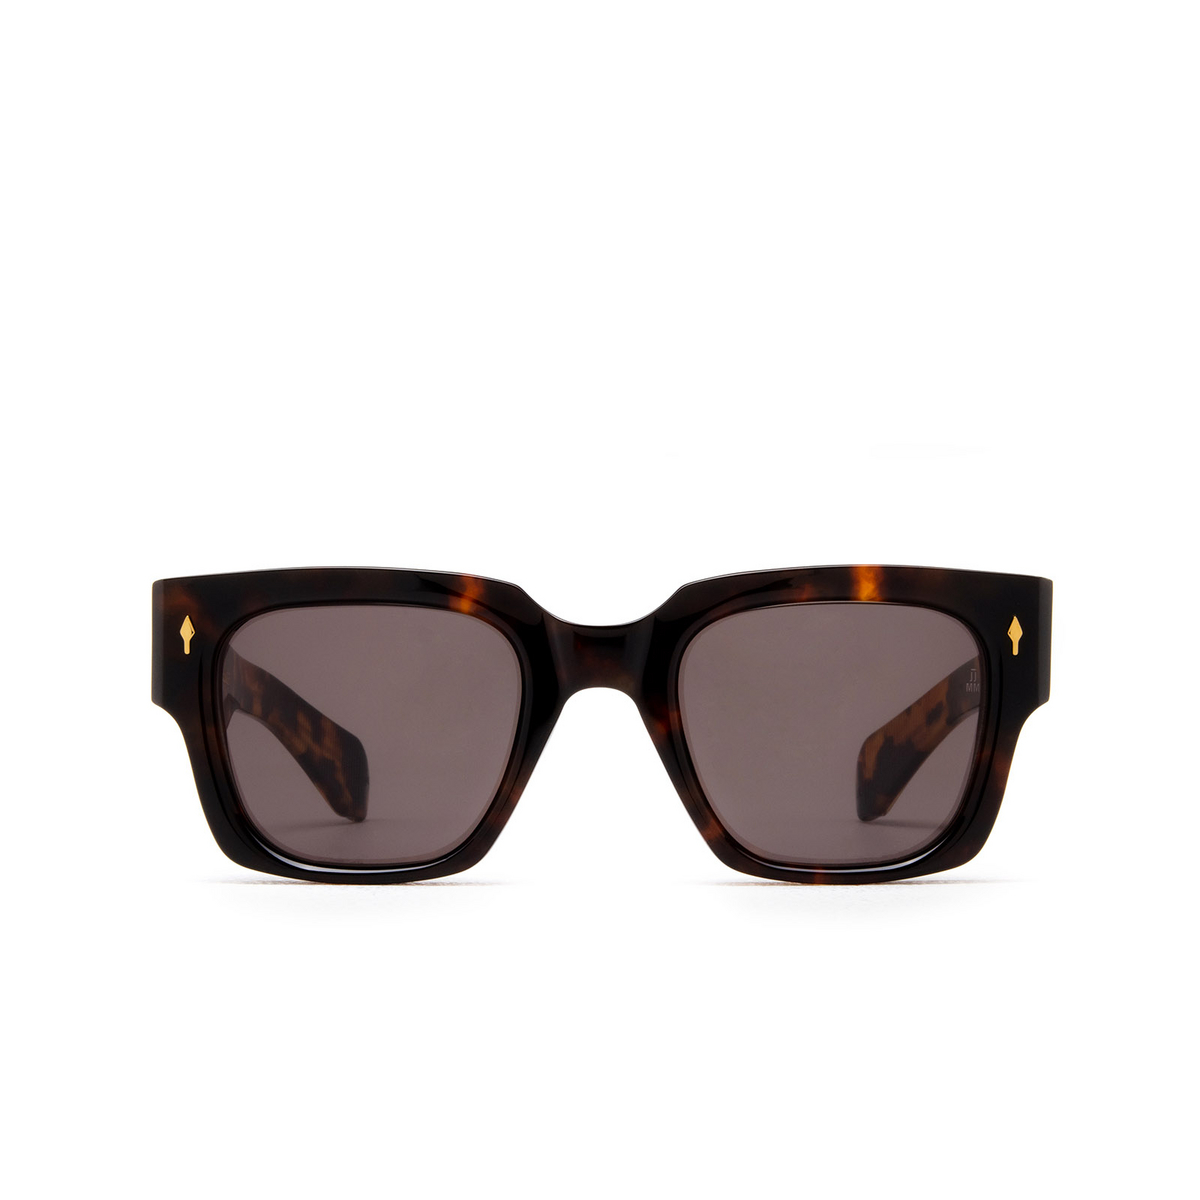 Jacques Marie Mage® Square Sunglasses: Enzo color Santos - front view